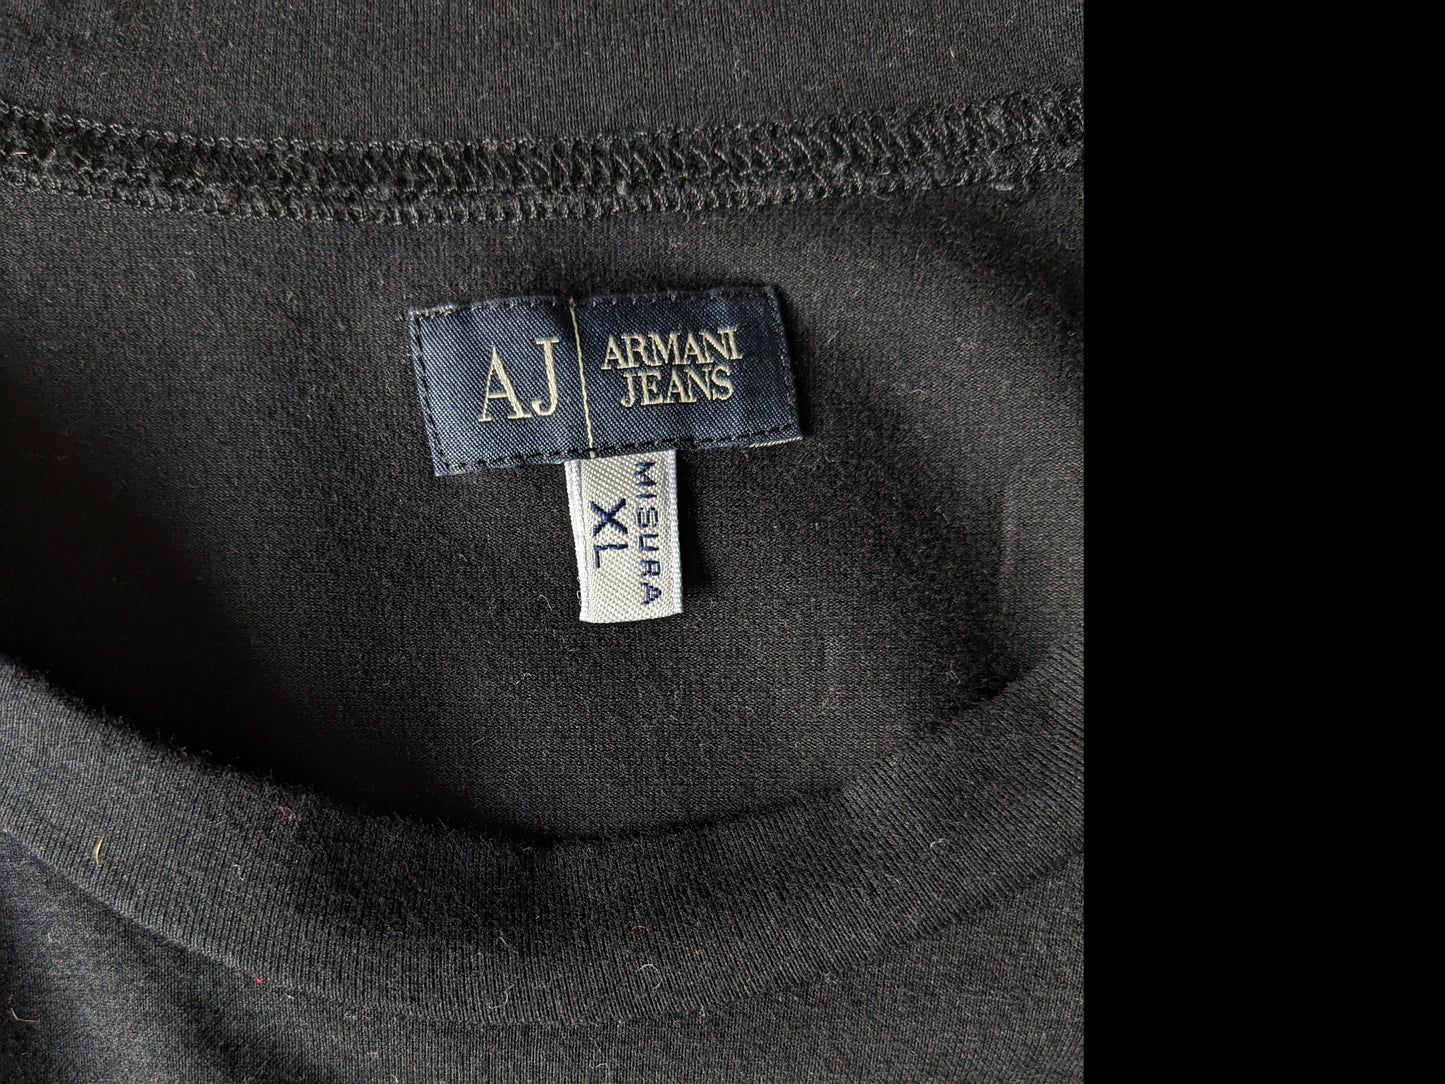 Armani Jeans chemise. Noir avec imprimé. extensible. Taille xl.